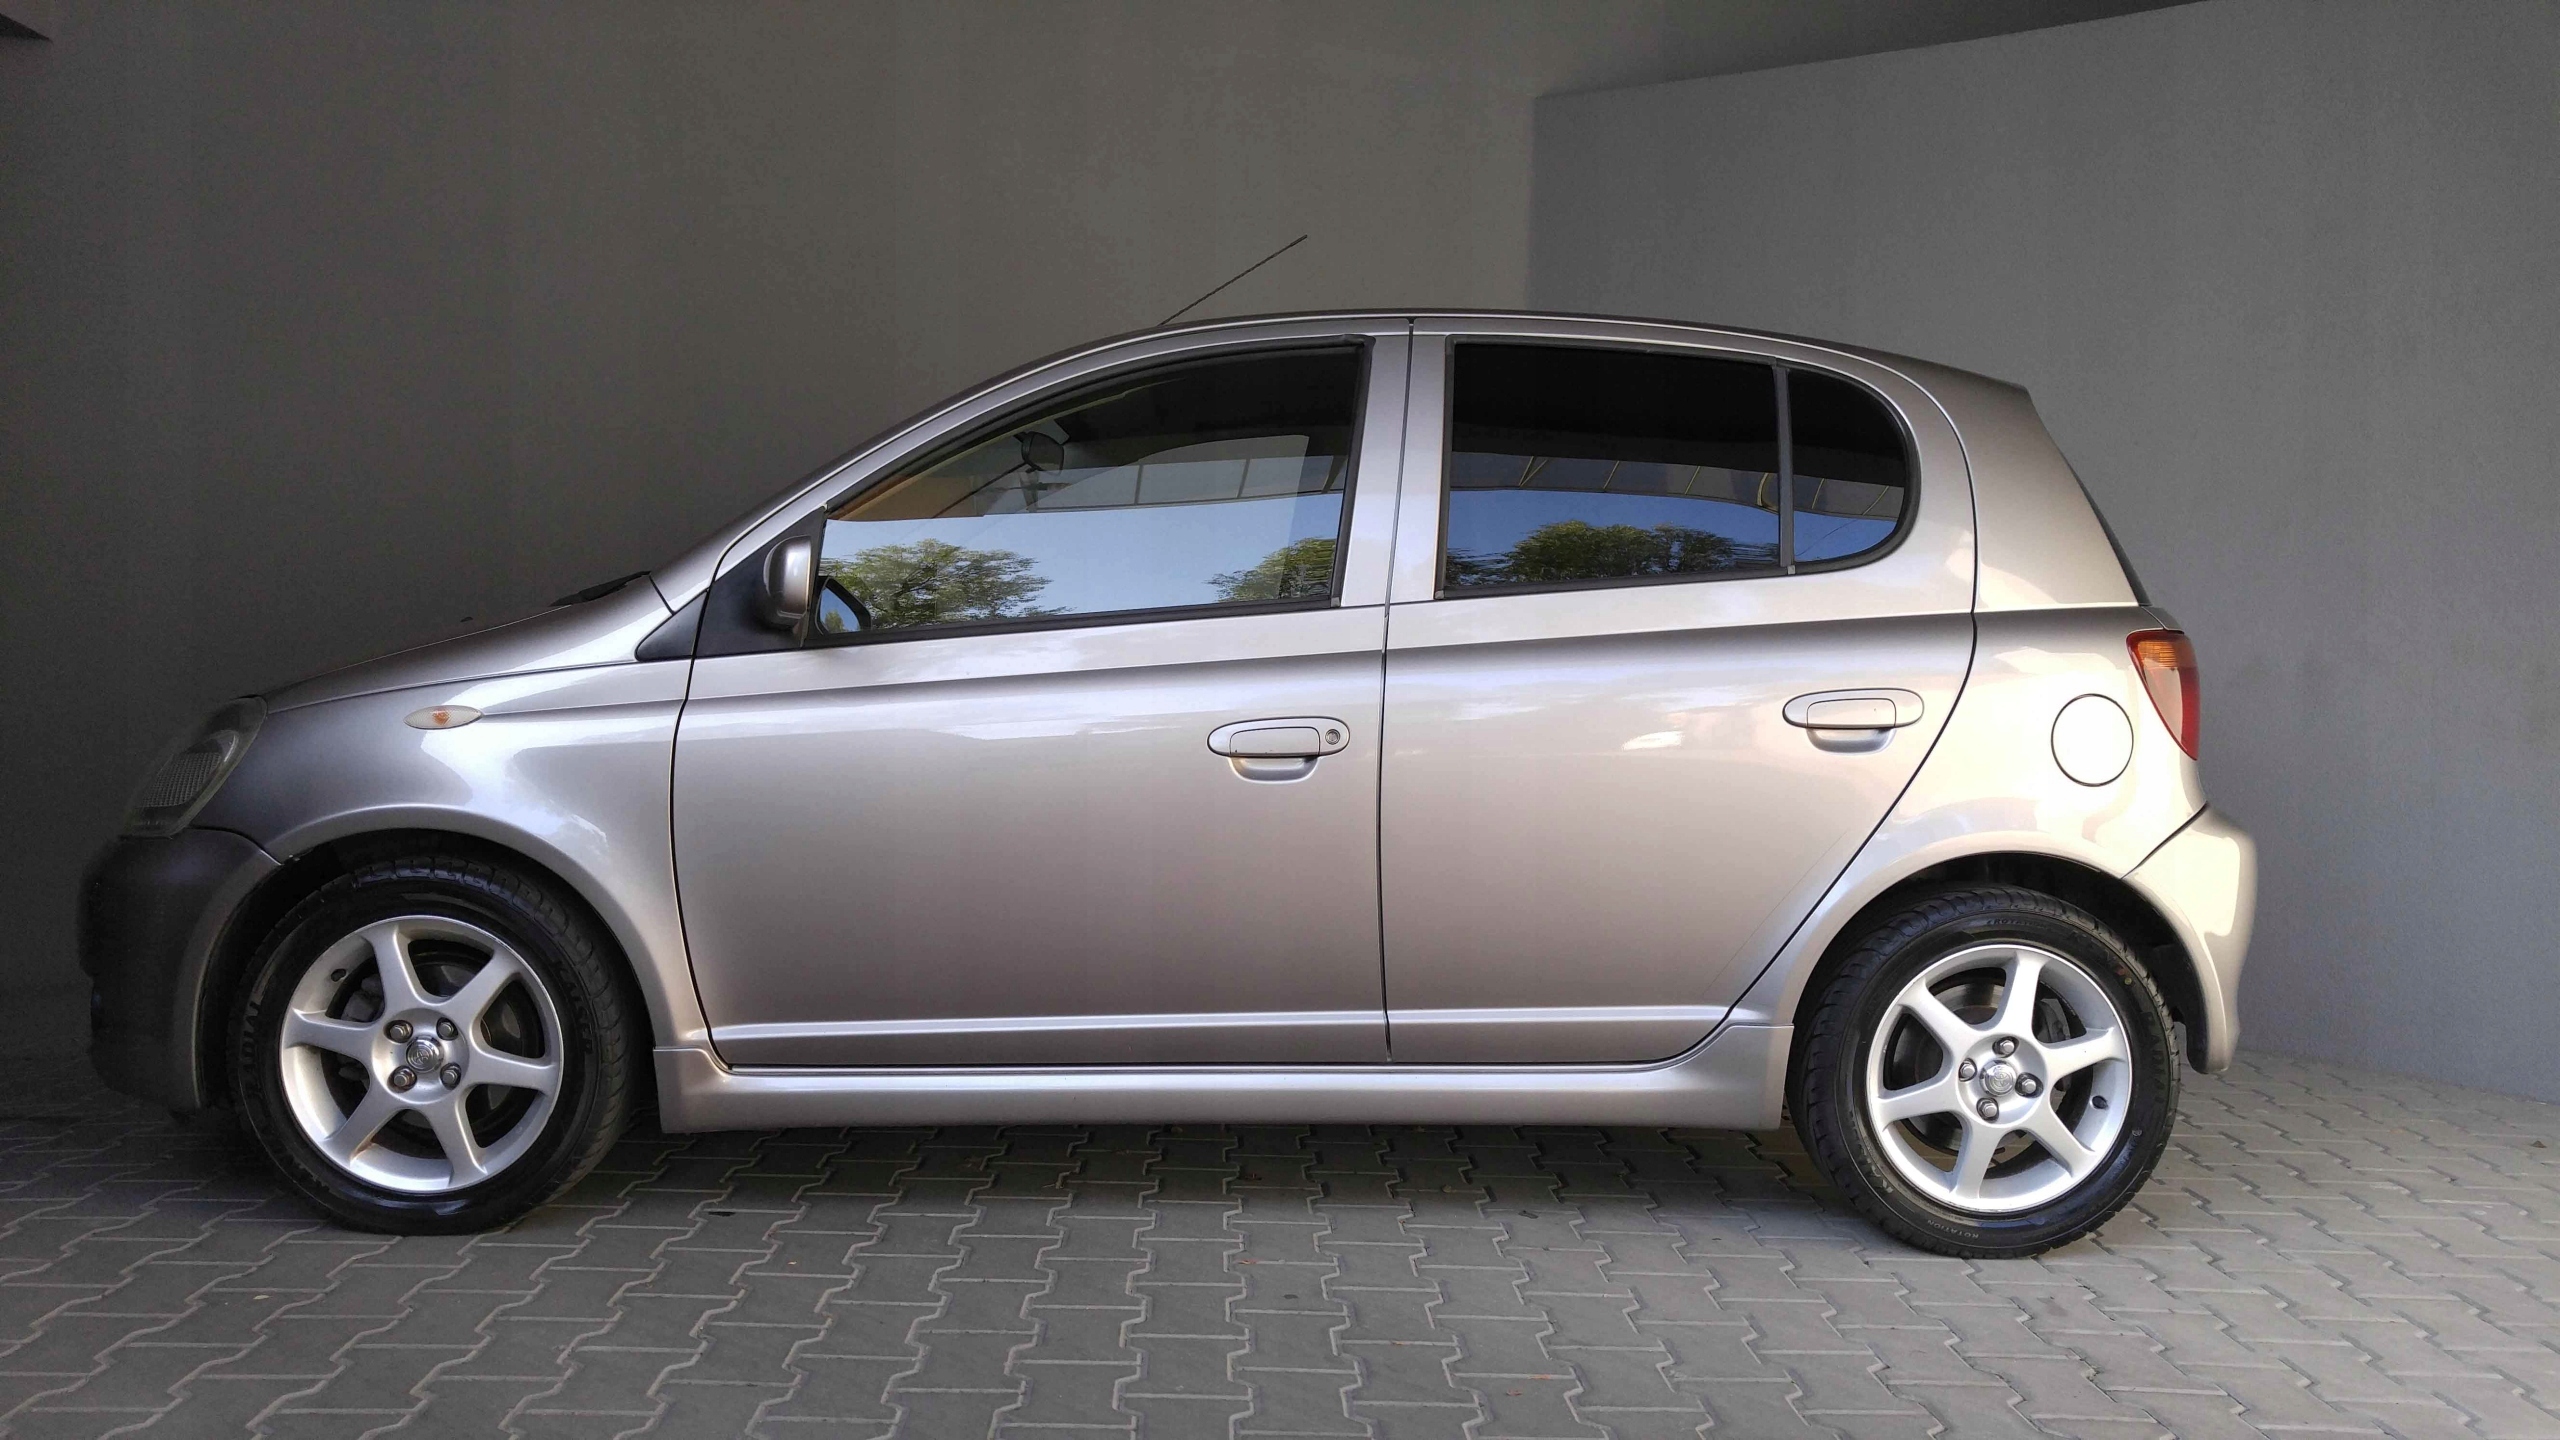 Toyota Yaris 1.5 TS stan idealny zarejestrowany